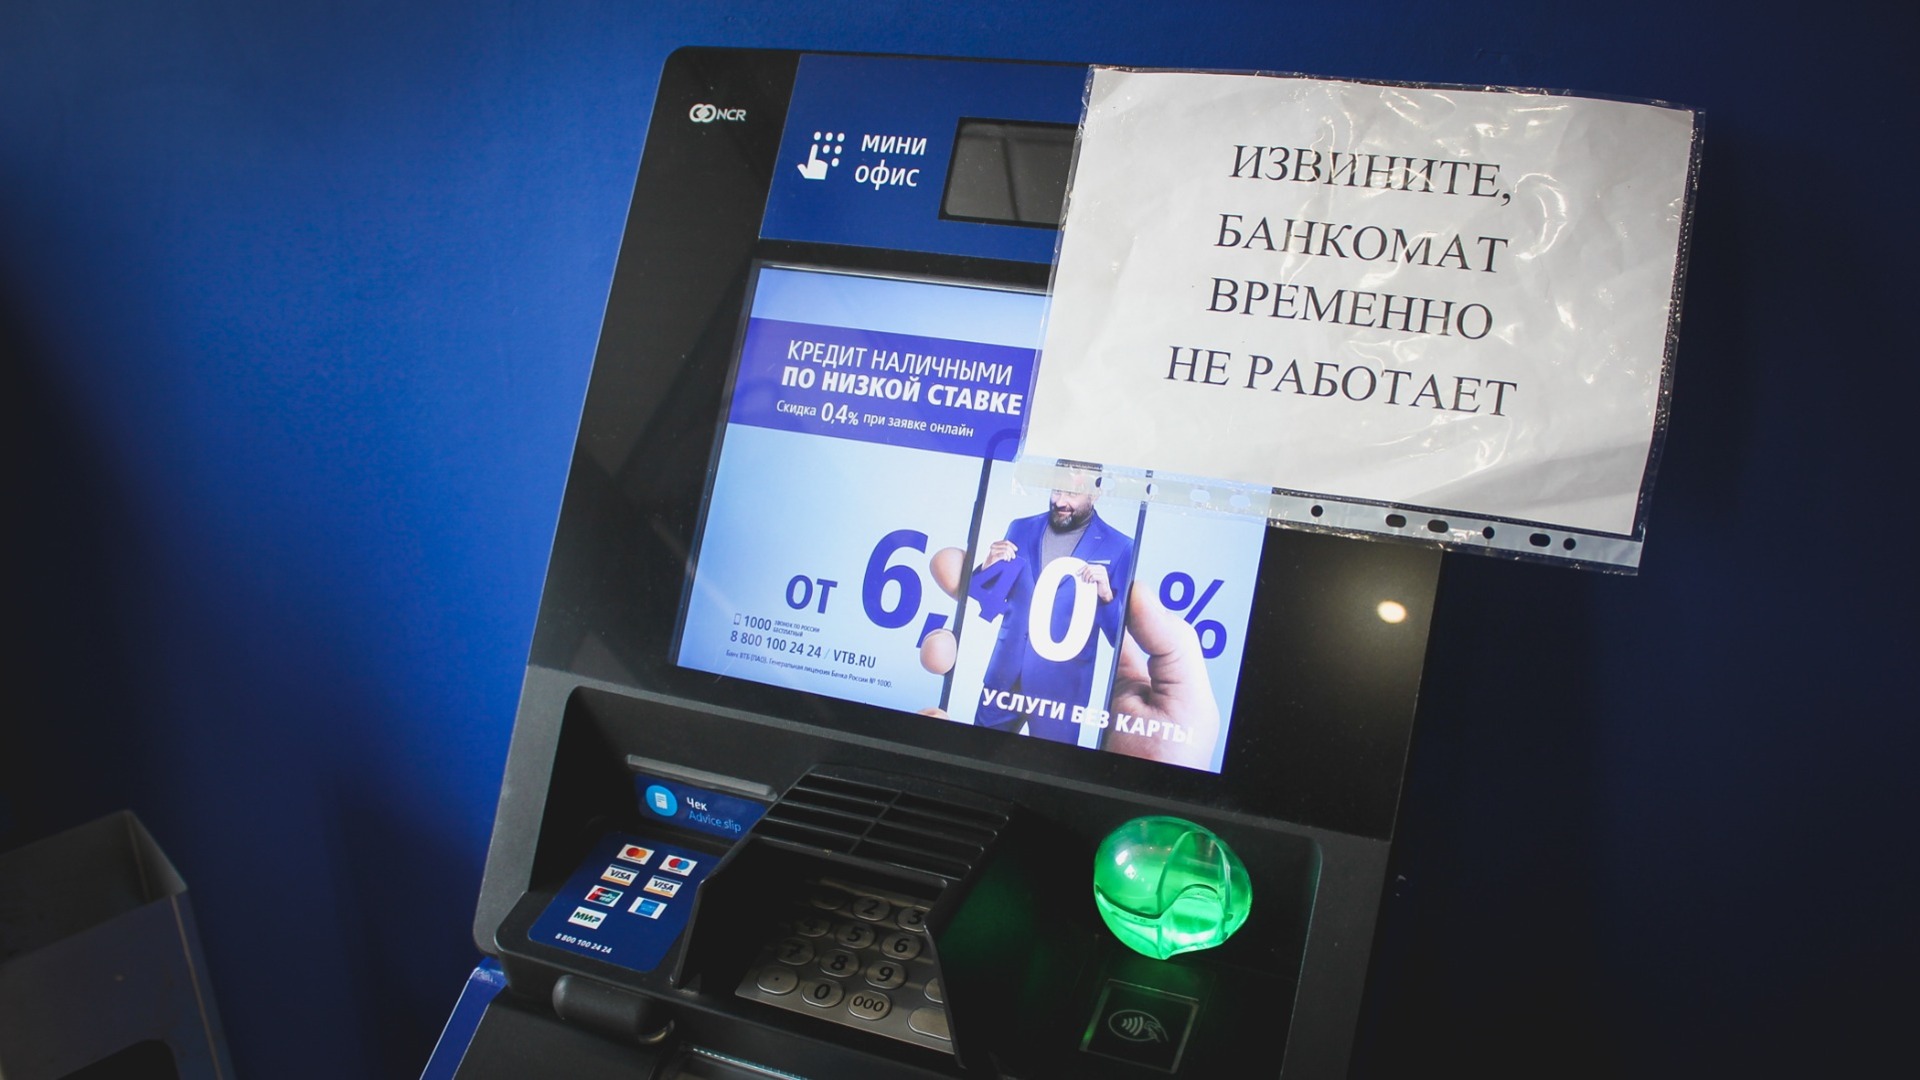 Дело завели на экс-руководителя офиса банка в Ставрополе за разглашение тайны